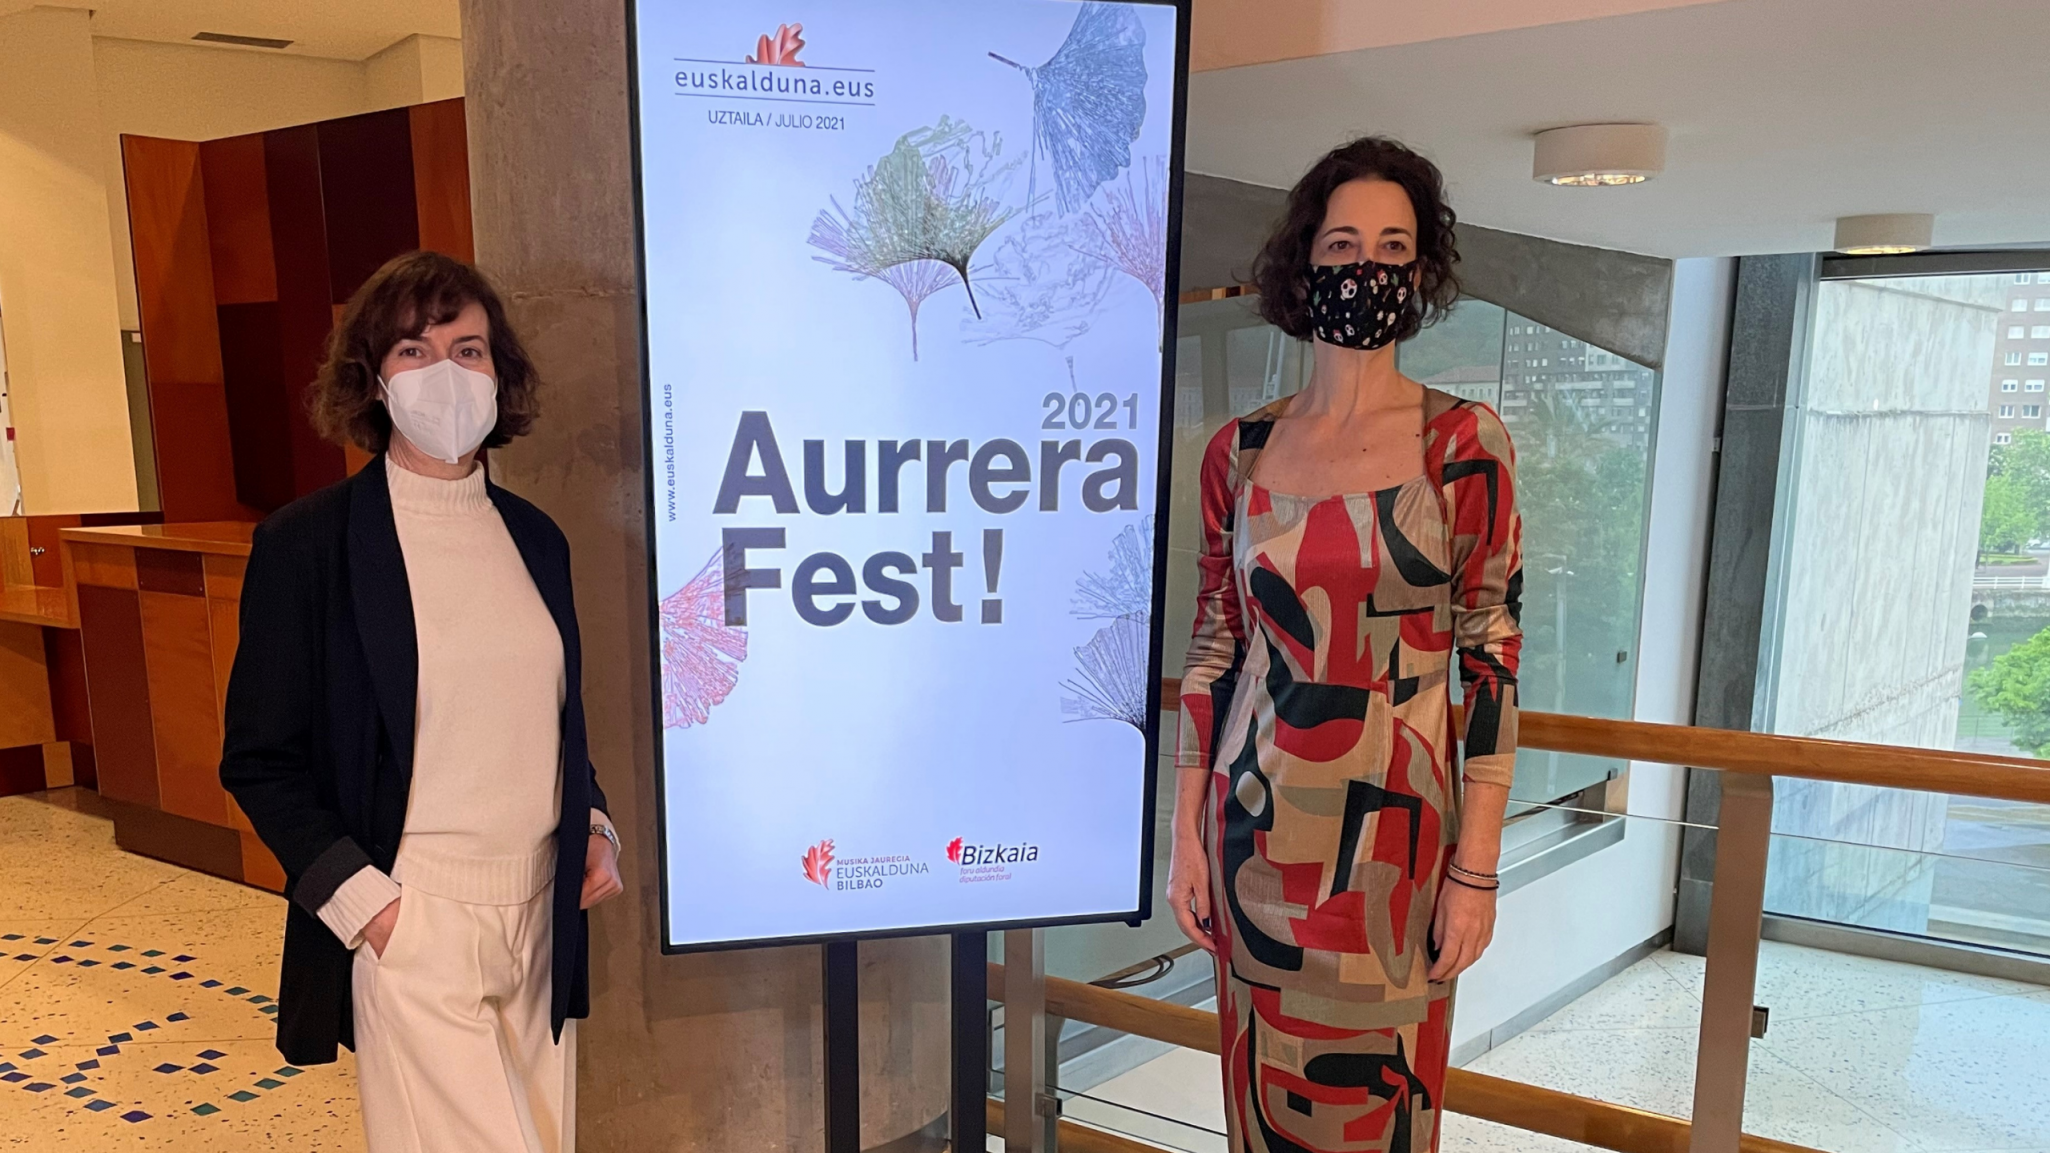 La Diputación Foral de Bizkaia lanza la II edición de «Aurrera Fest» en Euskalduna